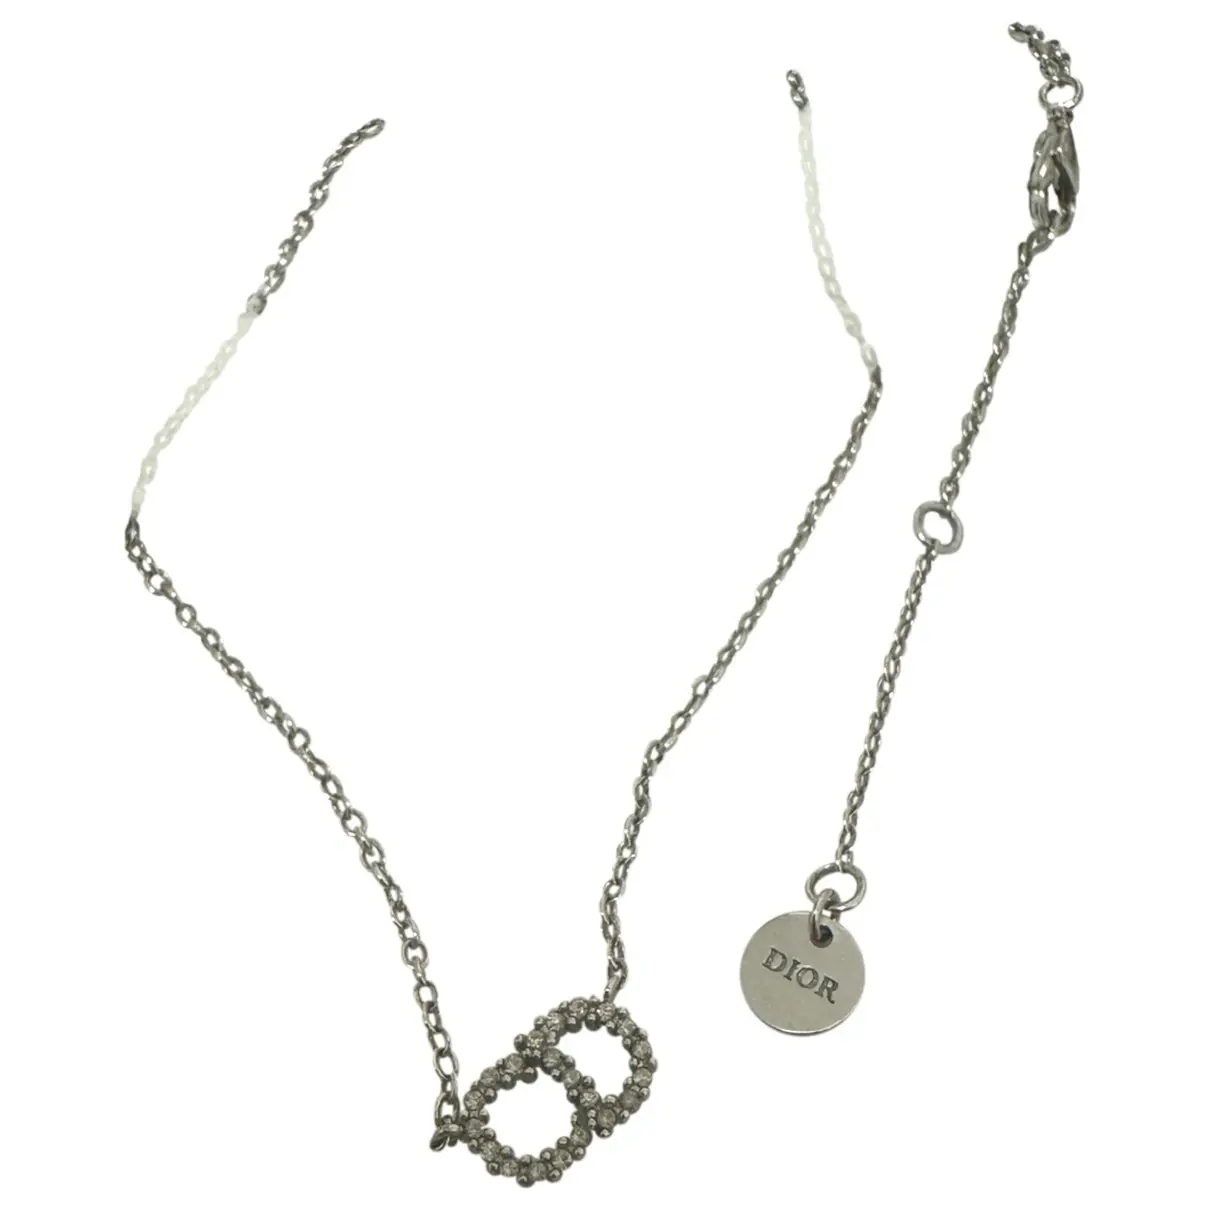 Clair D Lune necklace